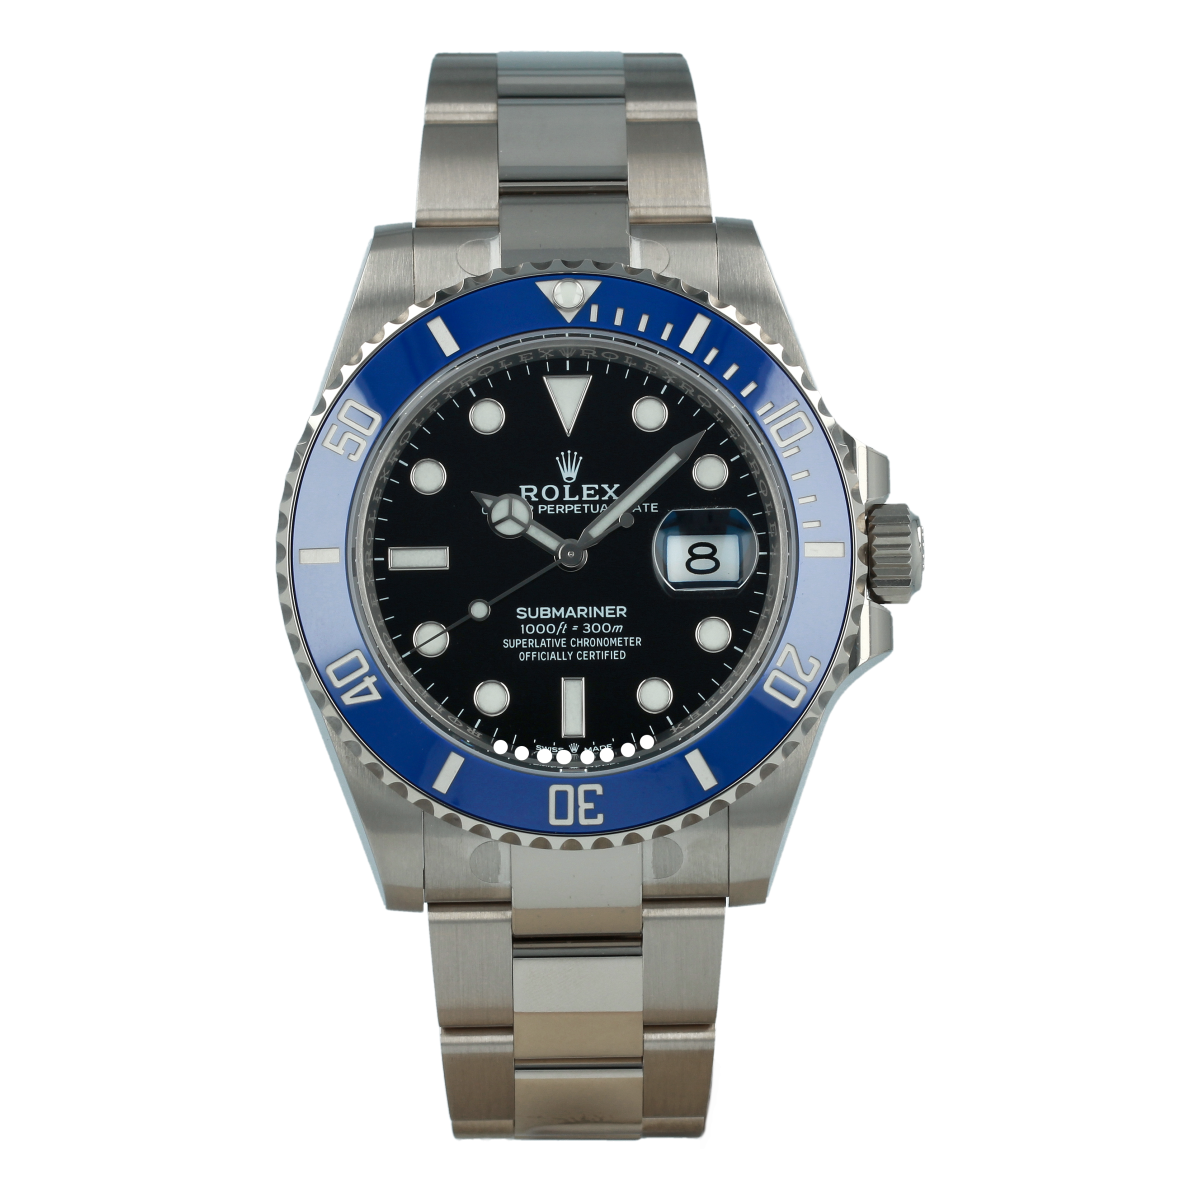 Rolex Submariner Date 126619LB Oro Blanco *Nuevo a Estrenar* | Comprar reloj Rolex de segunda mano